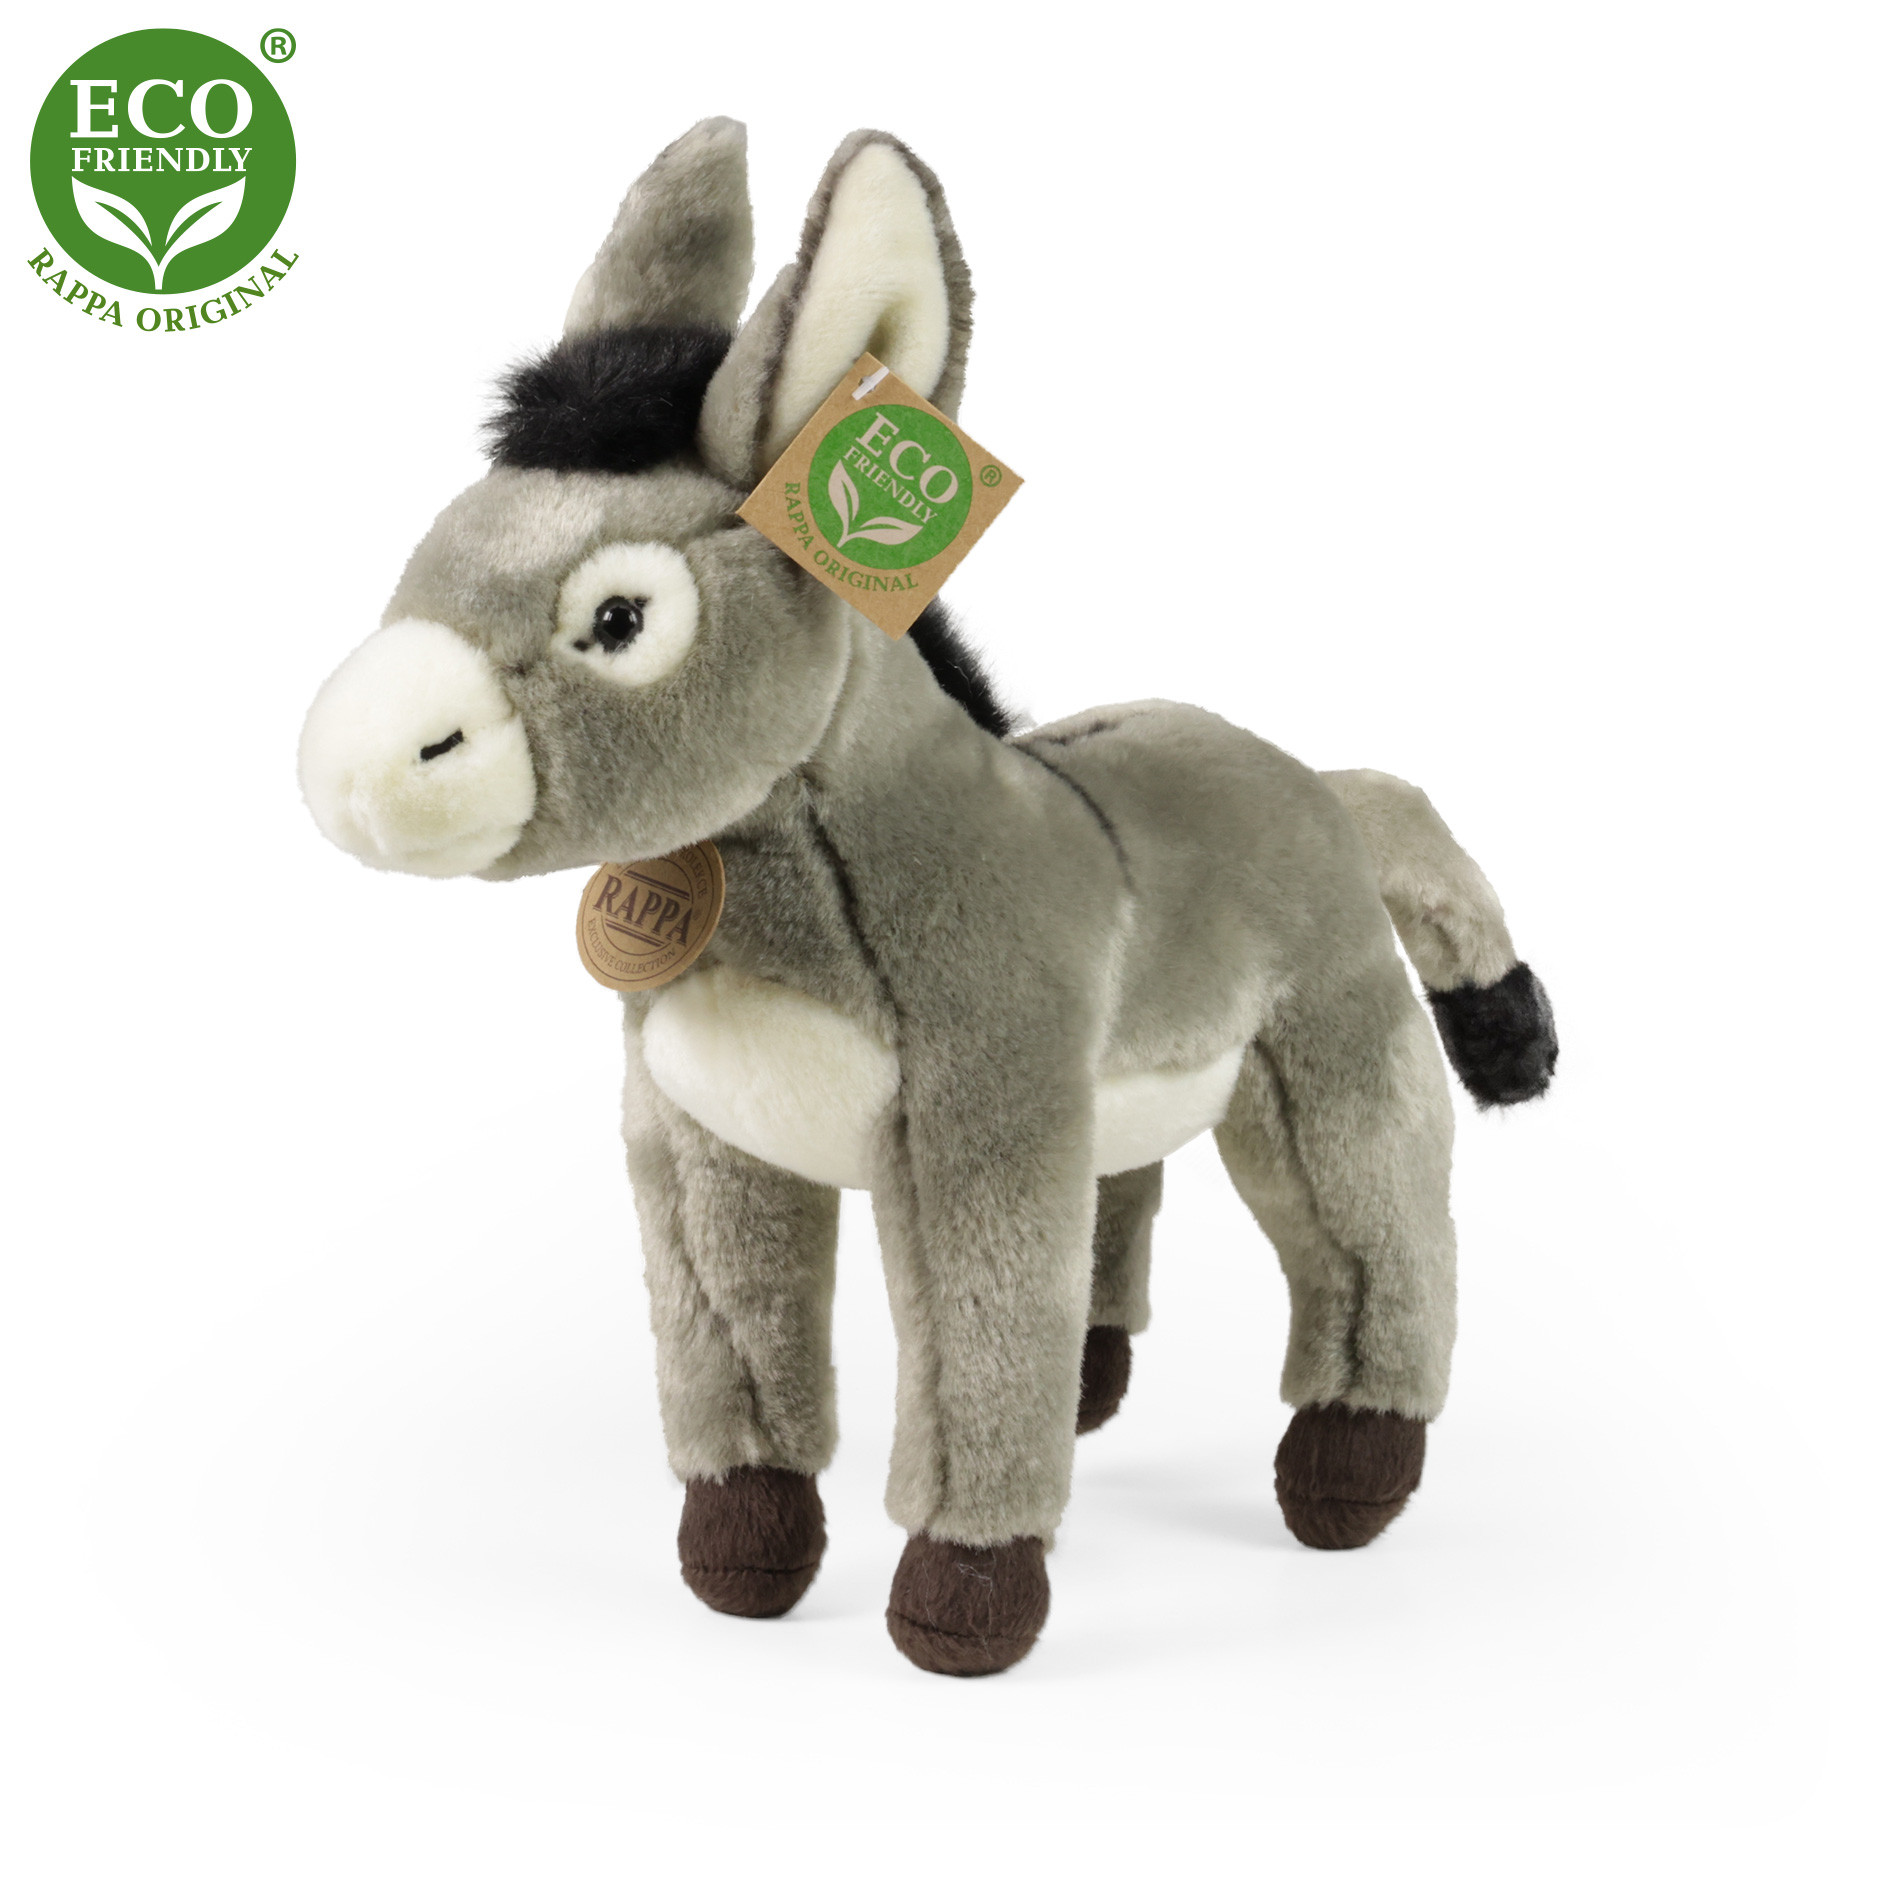 Plush donkey 24 cm ECO-FRIENDLY